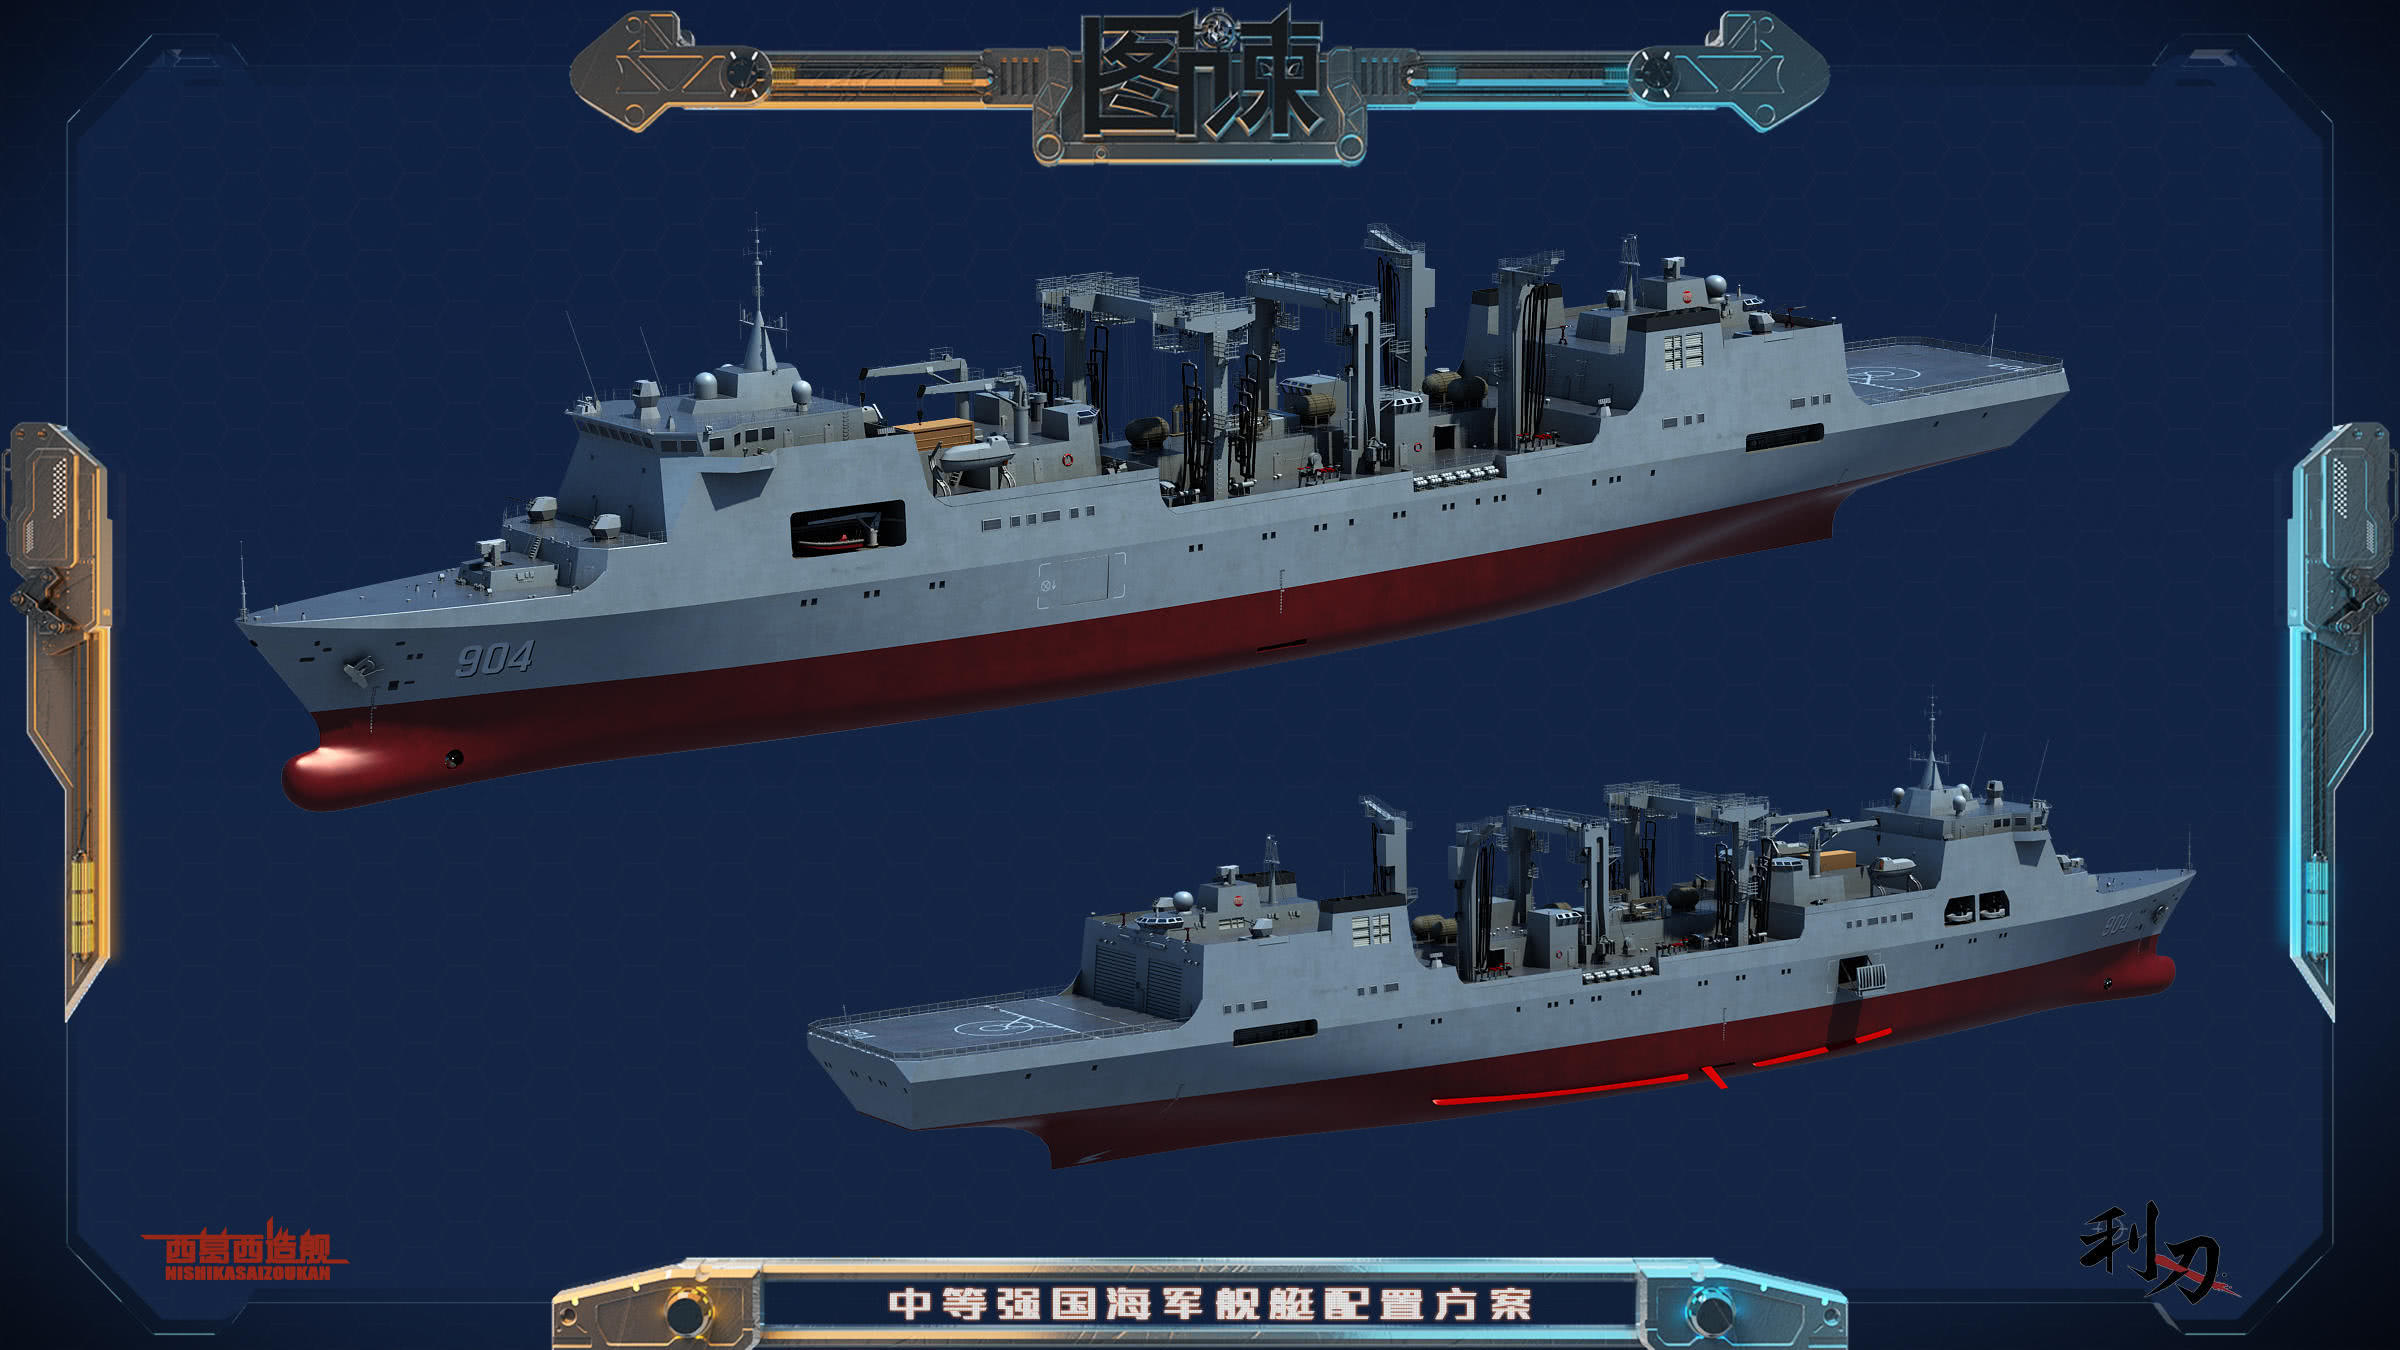 图谏cg:能一次出口一支中等强国海军!中国造船实力笑傲全球